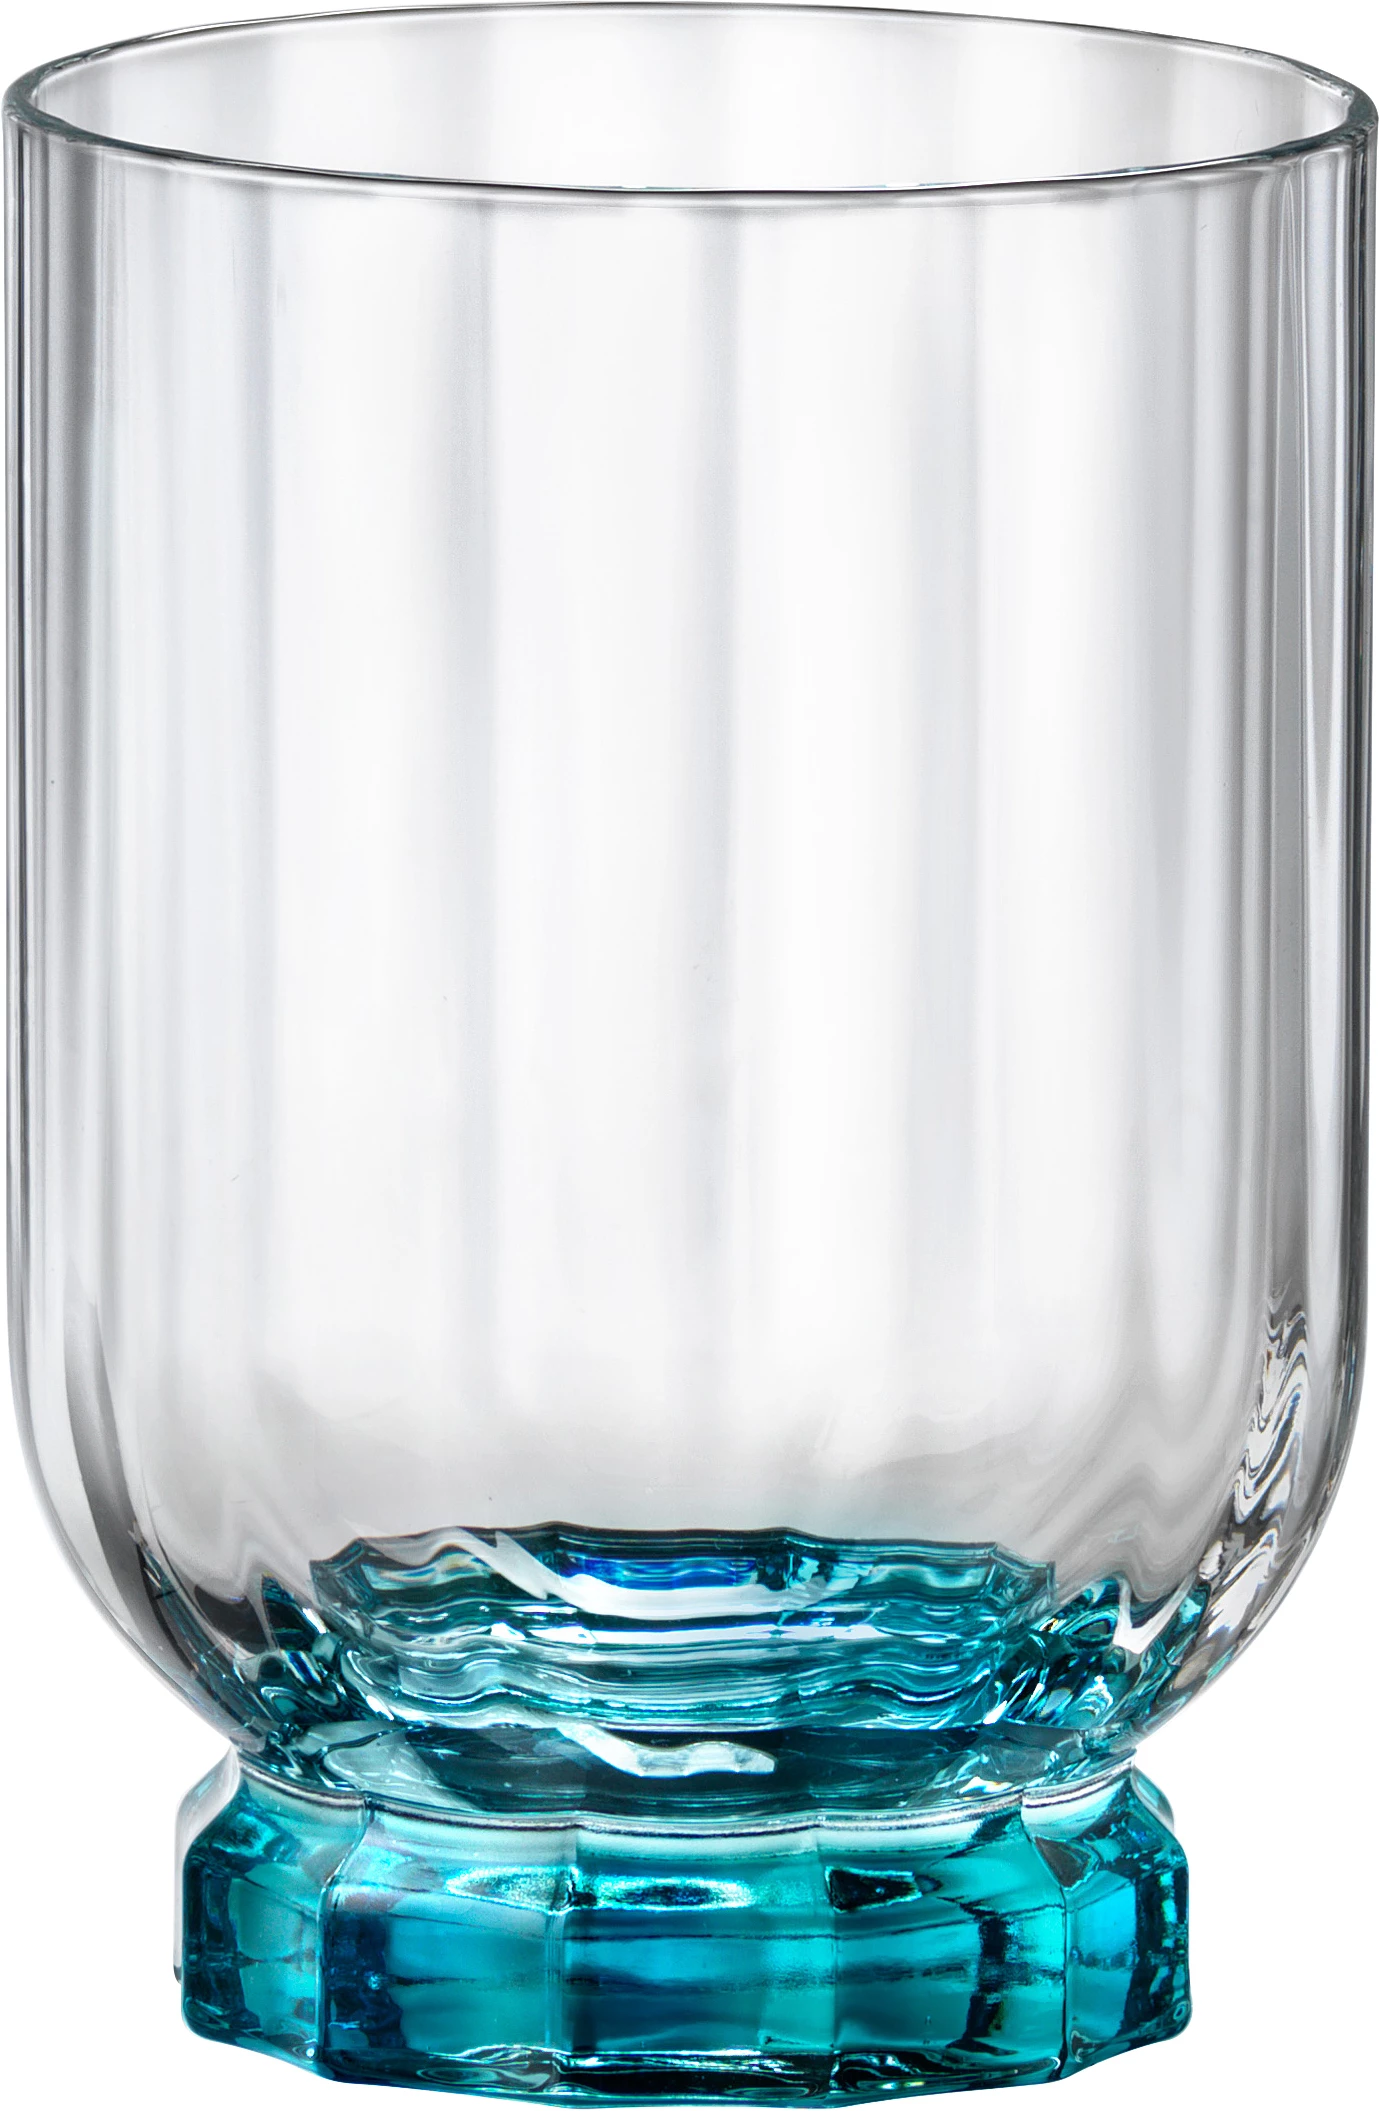 Jeg var overrasket sejr utålmodig Bormioli Florian drikkeglas, blå, 30 cl, H10,4 cm